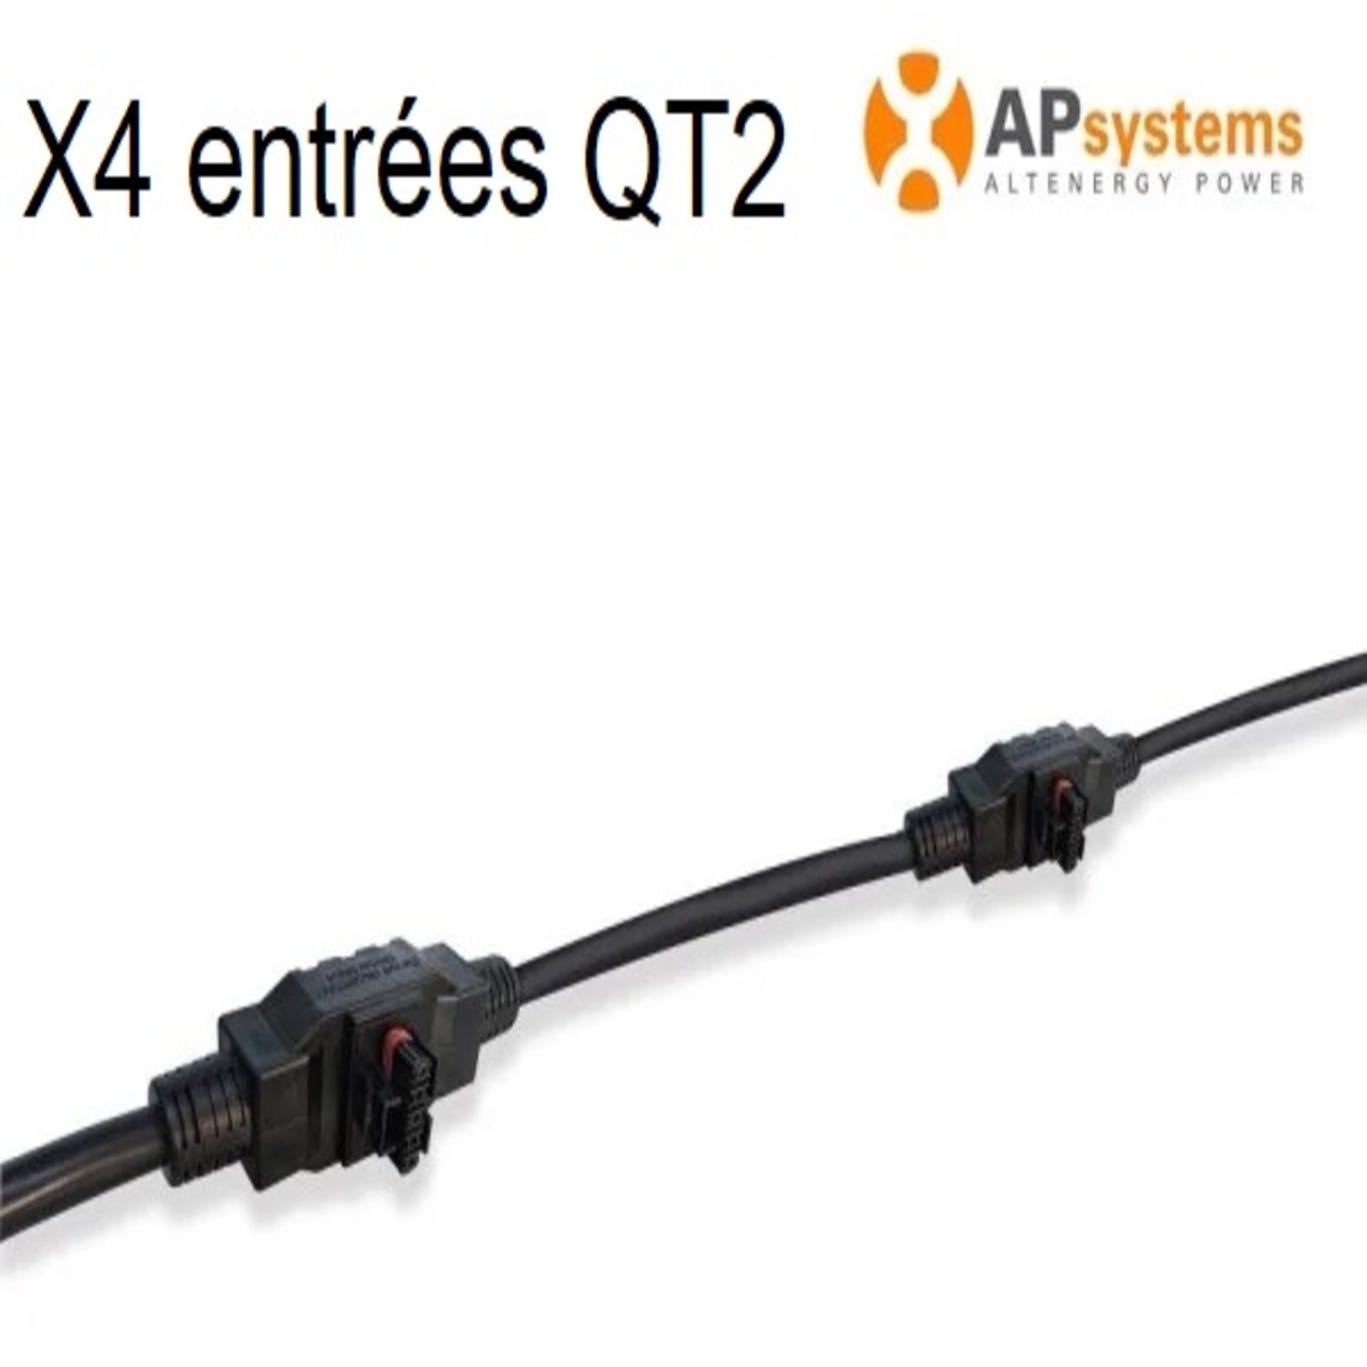 APS CABLE AC BUS QT2 - 4 ENTREES 0